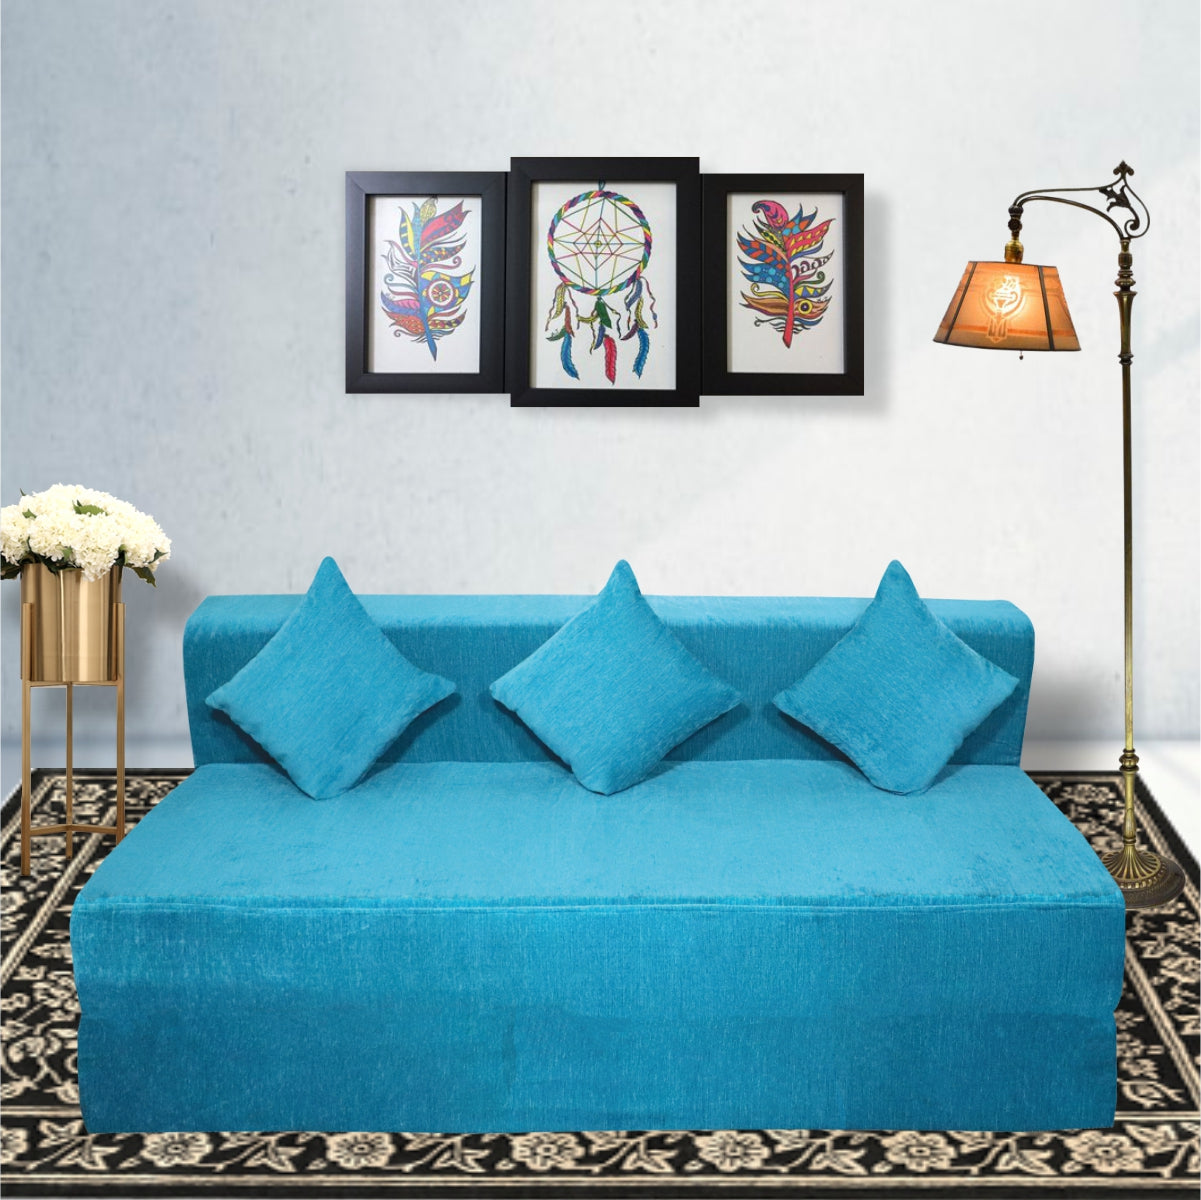 Cover of Sky Blue Molfino Fabric 6'X6' Rejoice Sofa cum Bed